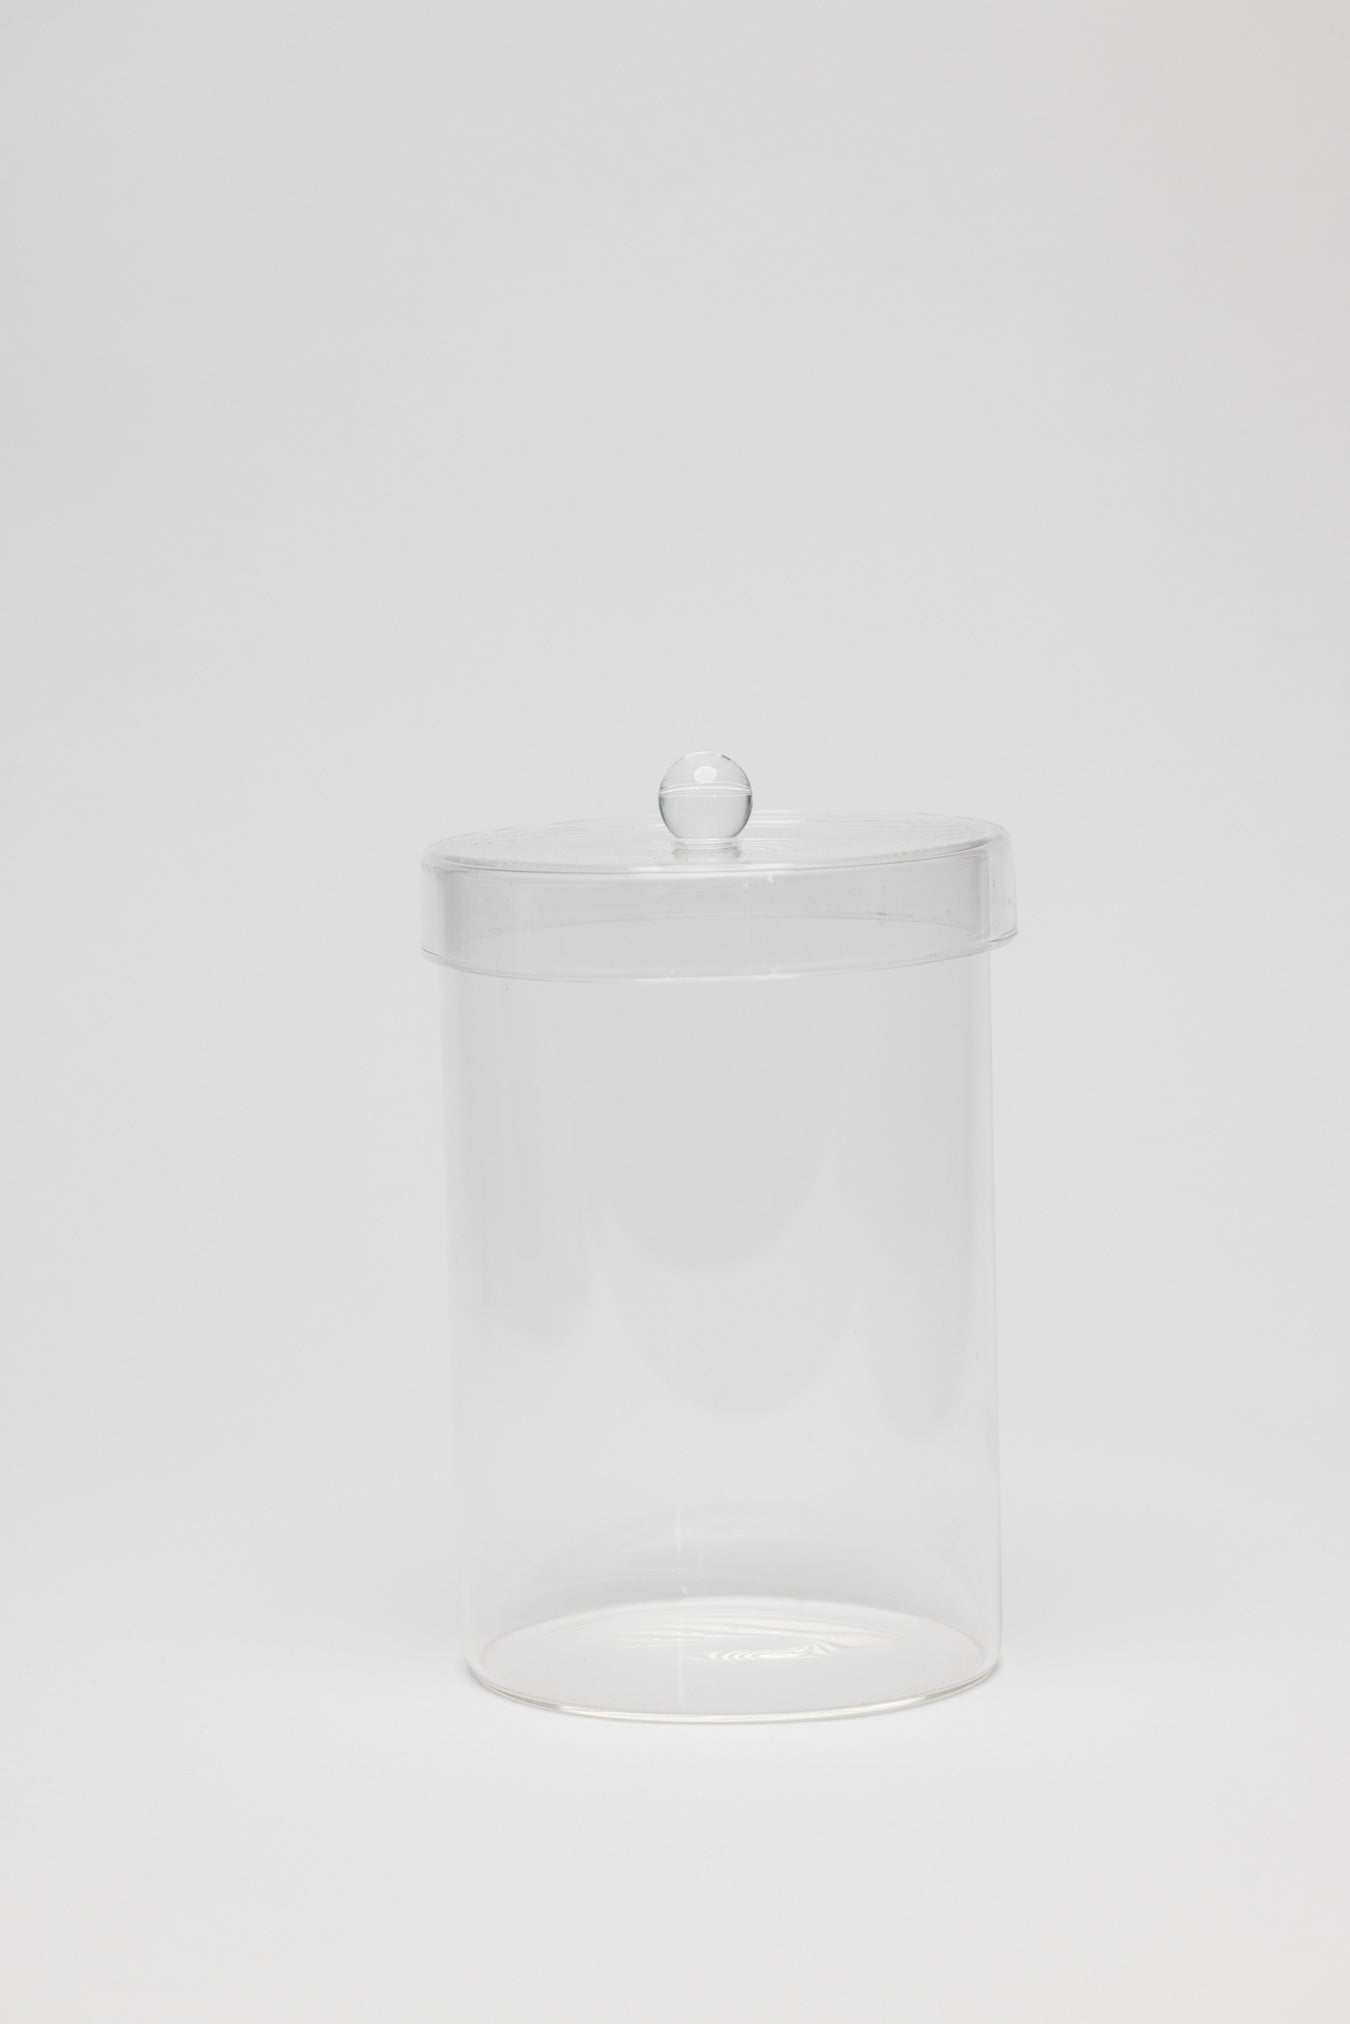 Vesta Glass Jar - 3 Sizes